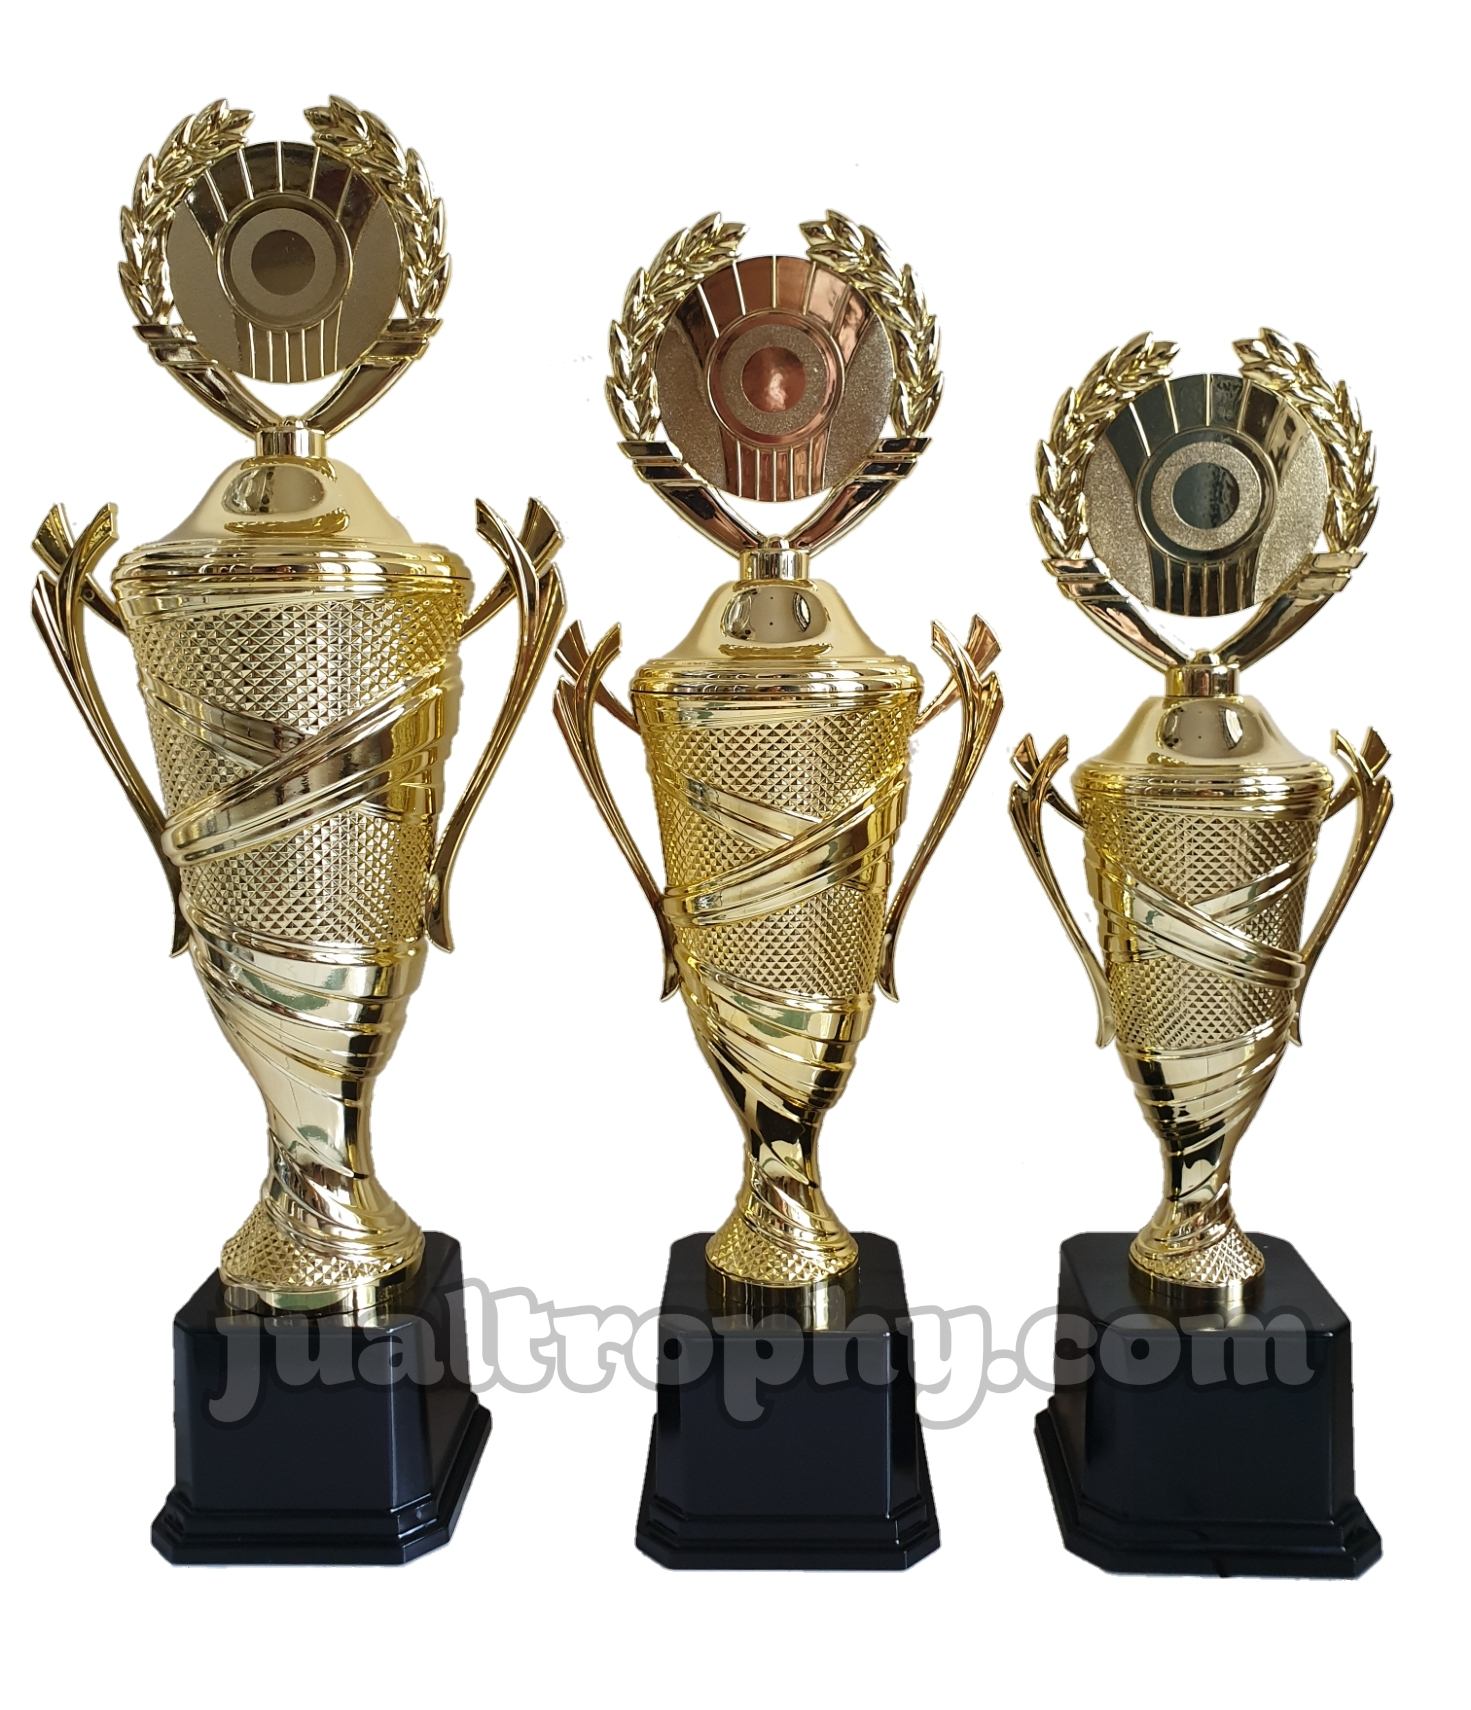 Jual Piala Jual Trophy Murah Harga Piala | Jual Trophy